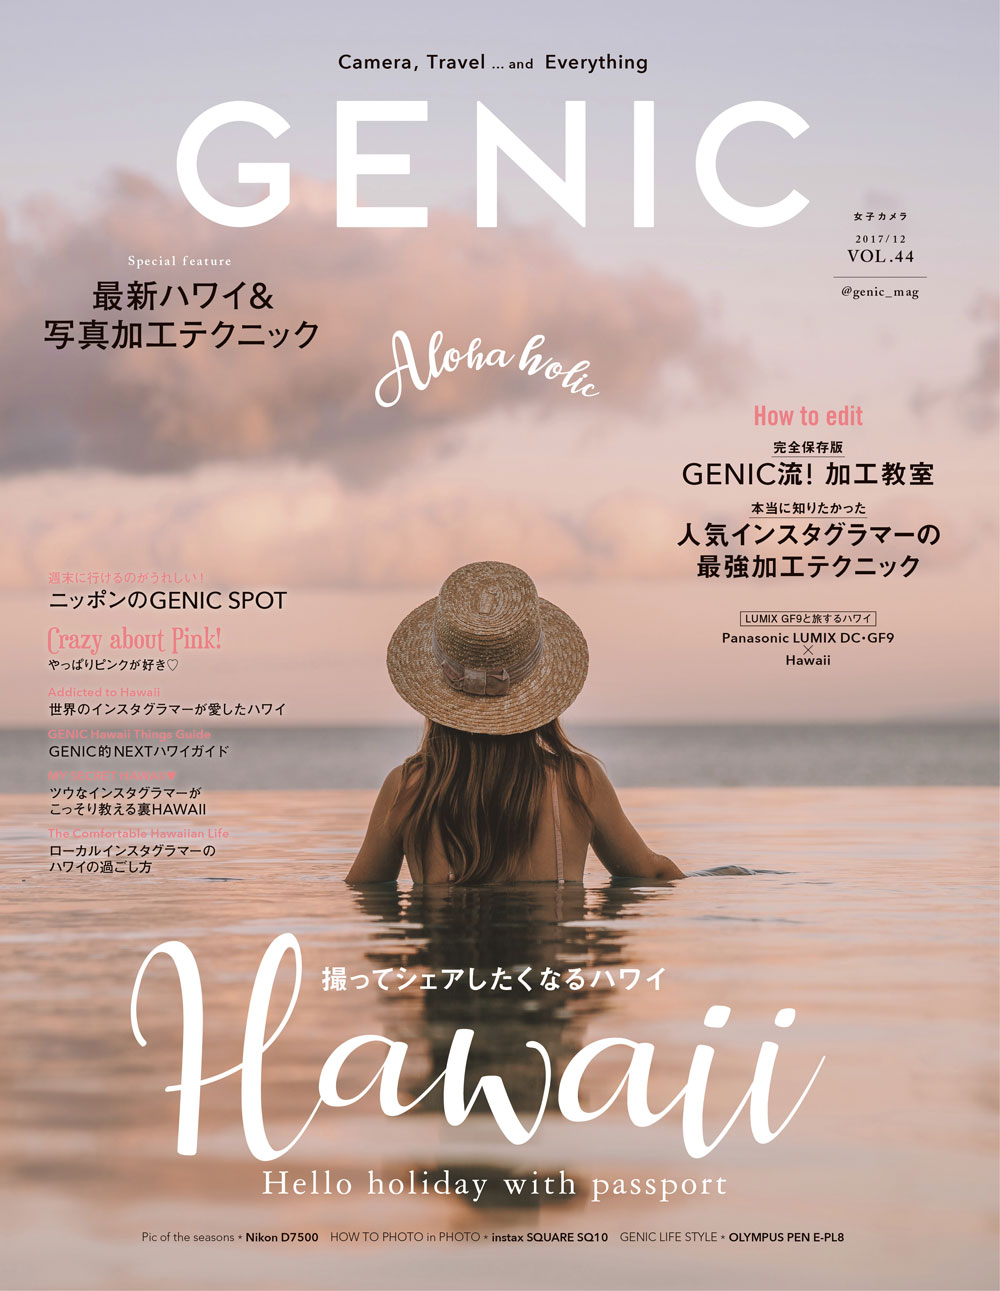 人気インスタグラマーの最強写真加工 テクニック シェアしたくなる最新ハワイ を 女子カメラgenic12月号 が大特集 ミツバチワークス株式会社のプレスリリース